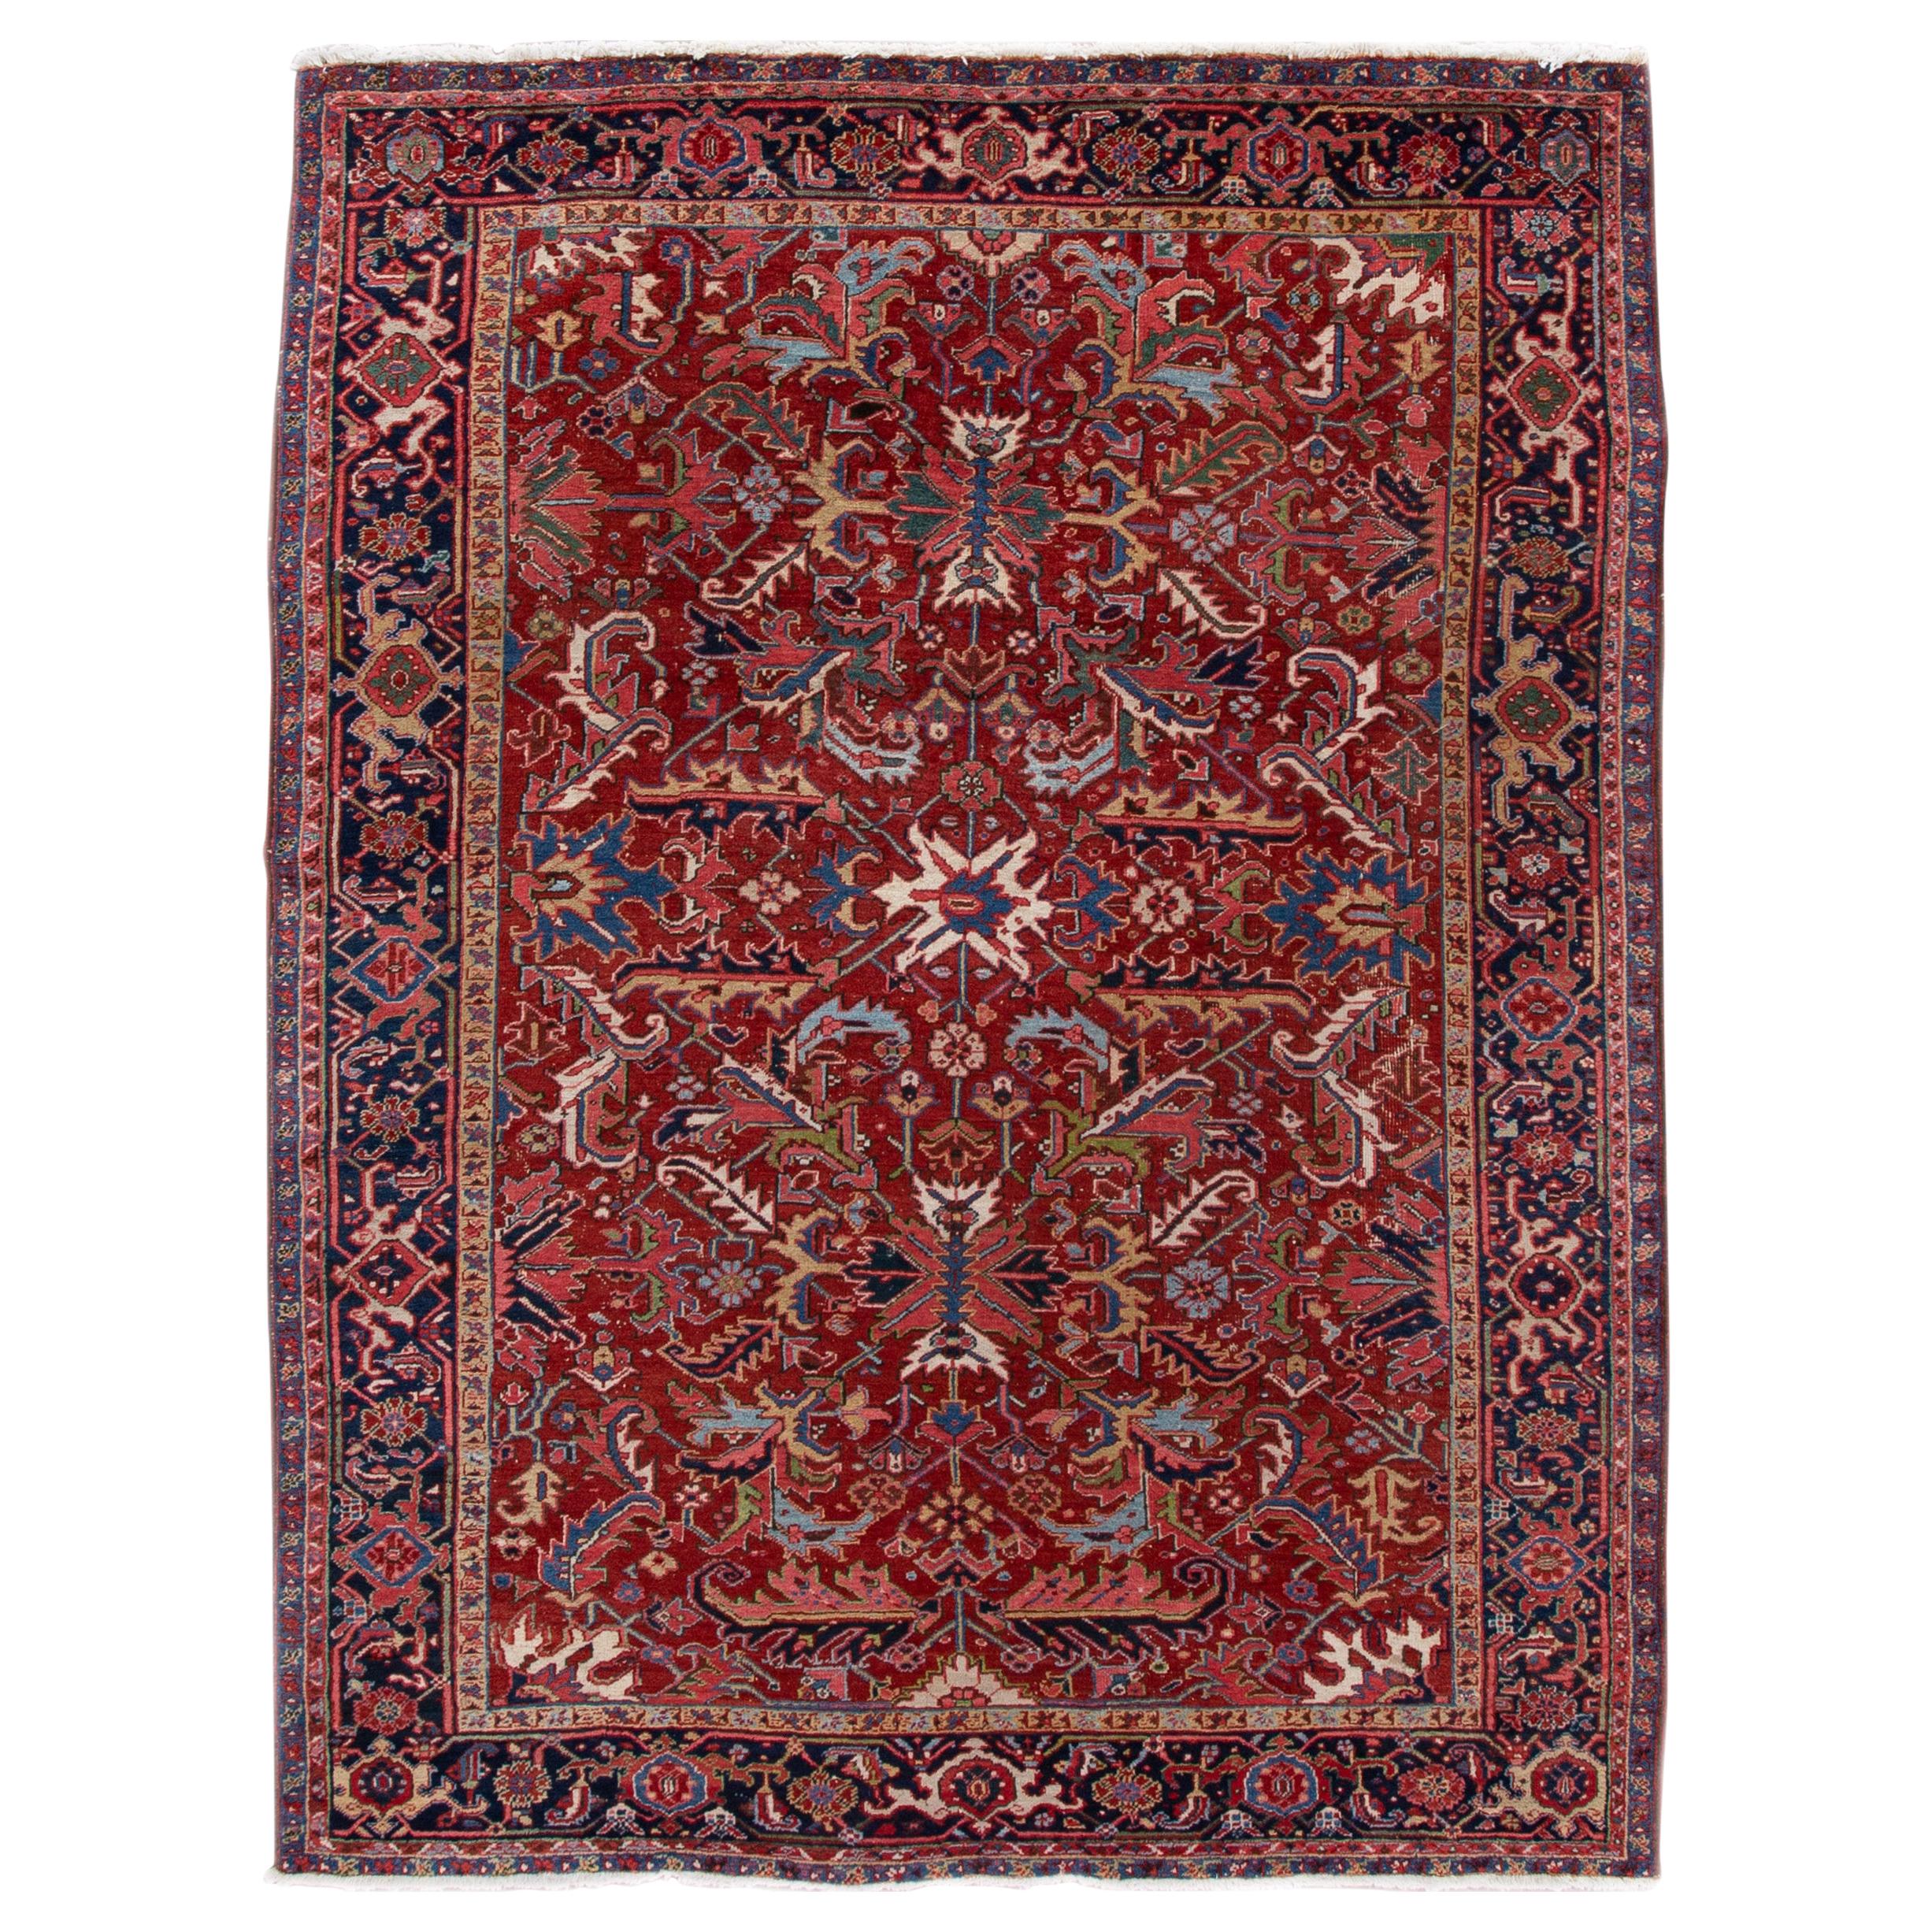 Antique Red Persian Heriz Handmade Floral Wool Rug